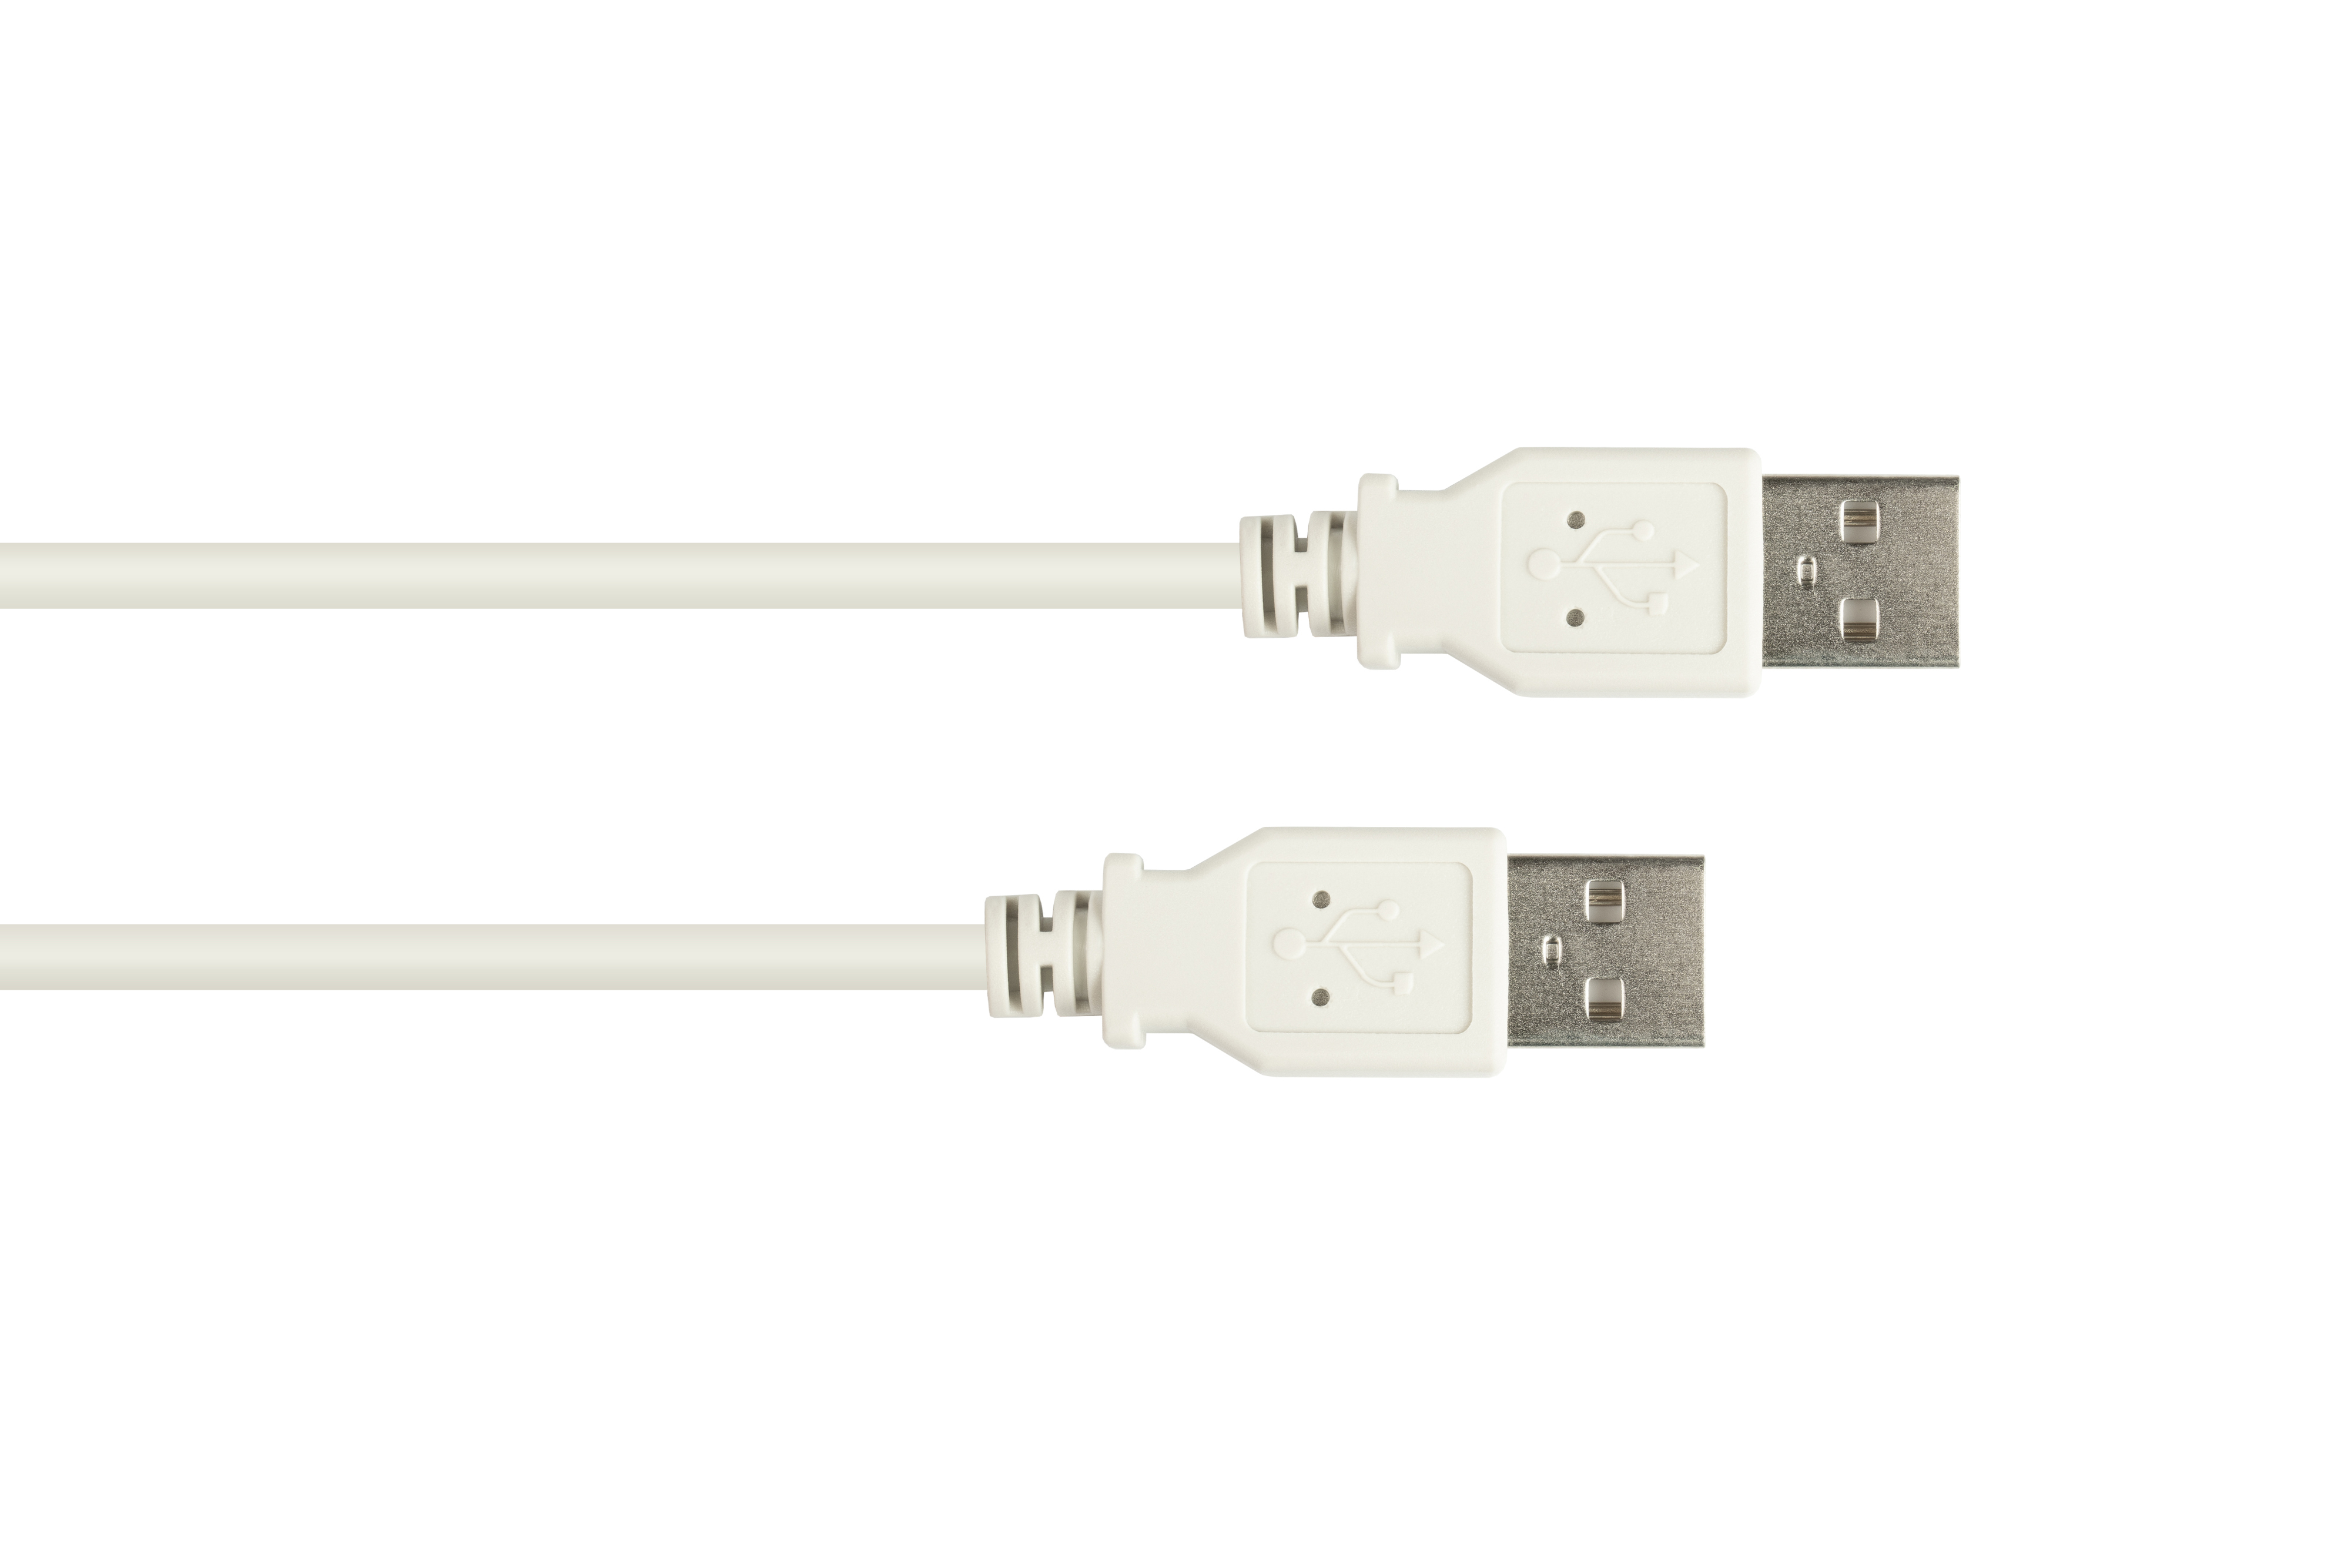 Anschlusskabel Stecker Stecker A 2.0 grau an USB A, CONNECTIONS GOOD